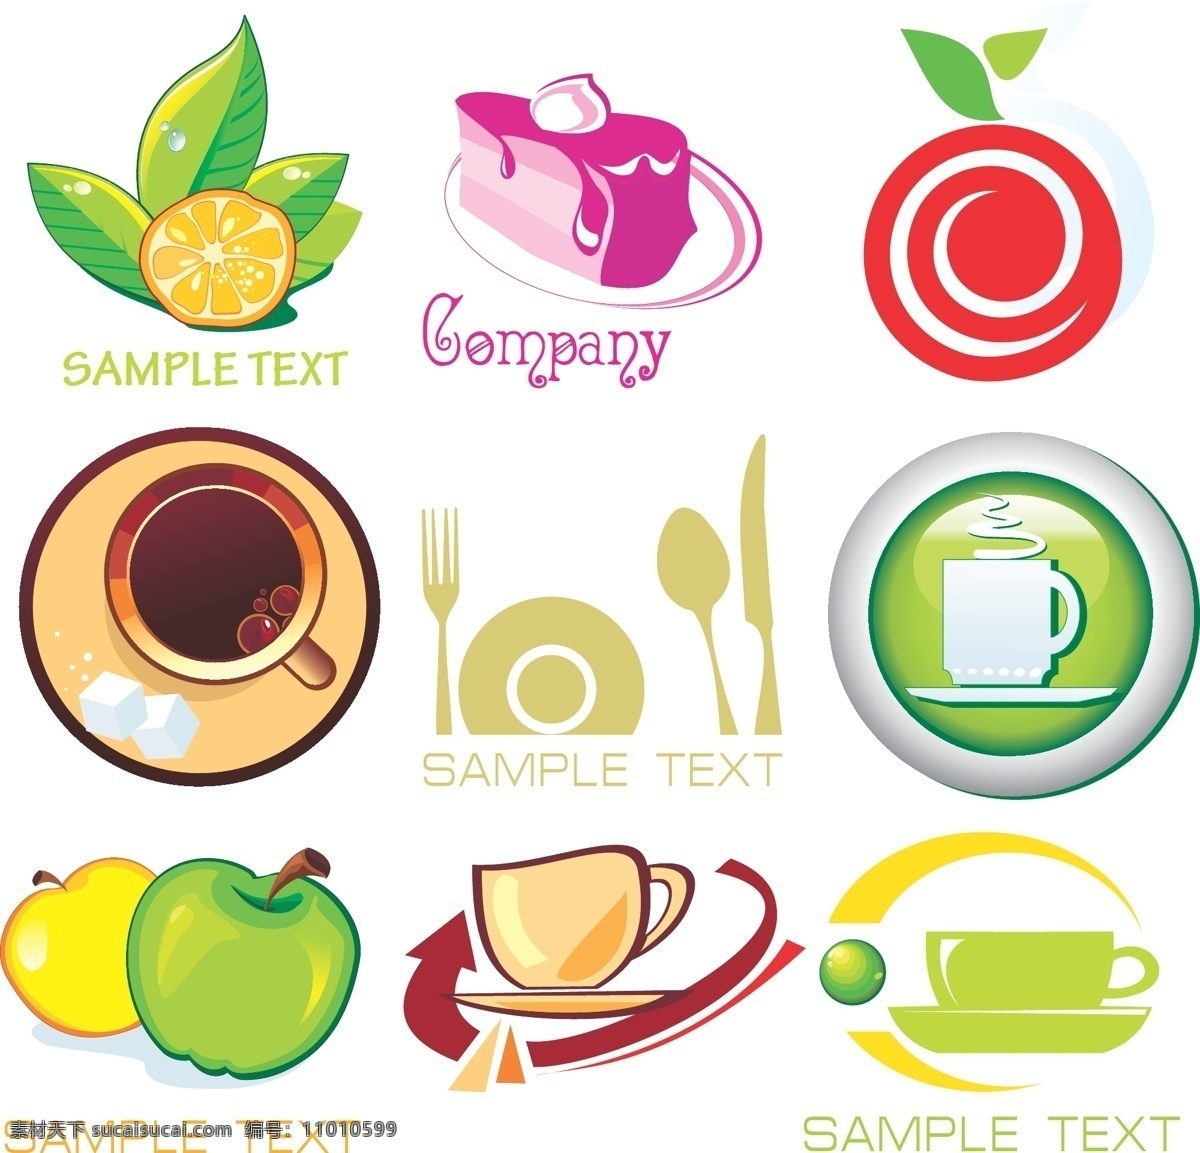 logo 餐饮美食 蛋糕 咖啡 绿叶 苹果 生活百科 水滴 水果 图标 矢量 模板下载 水珠 线条 矢量图 日常生活